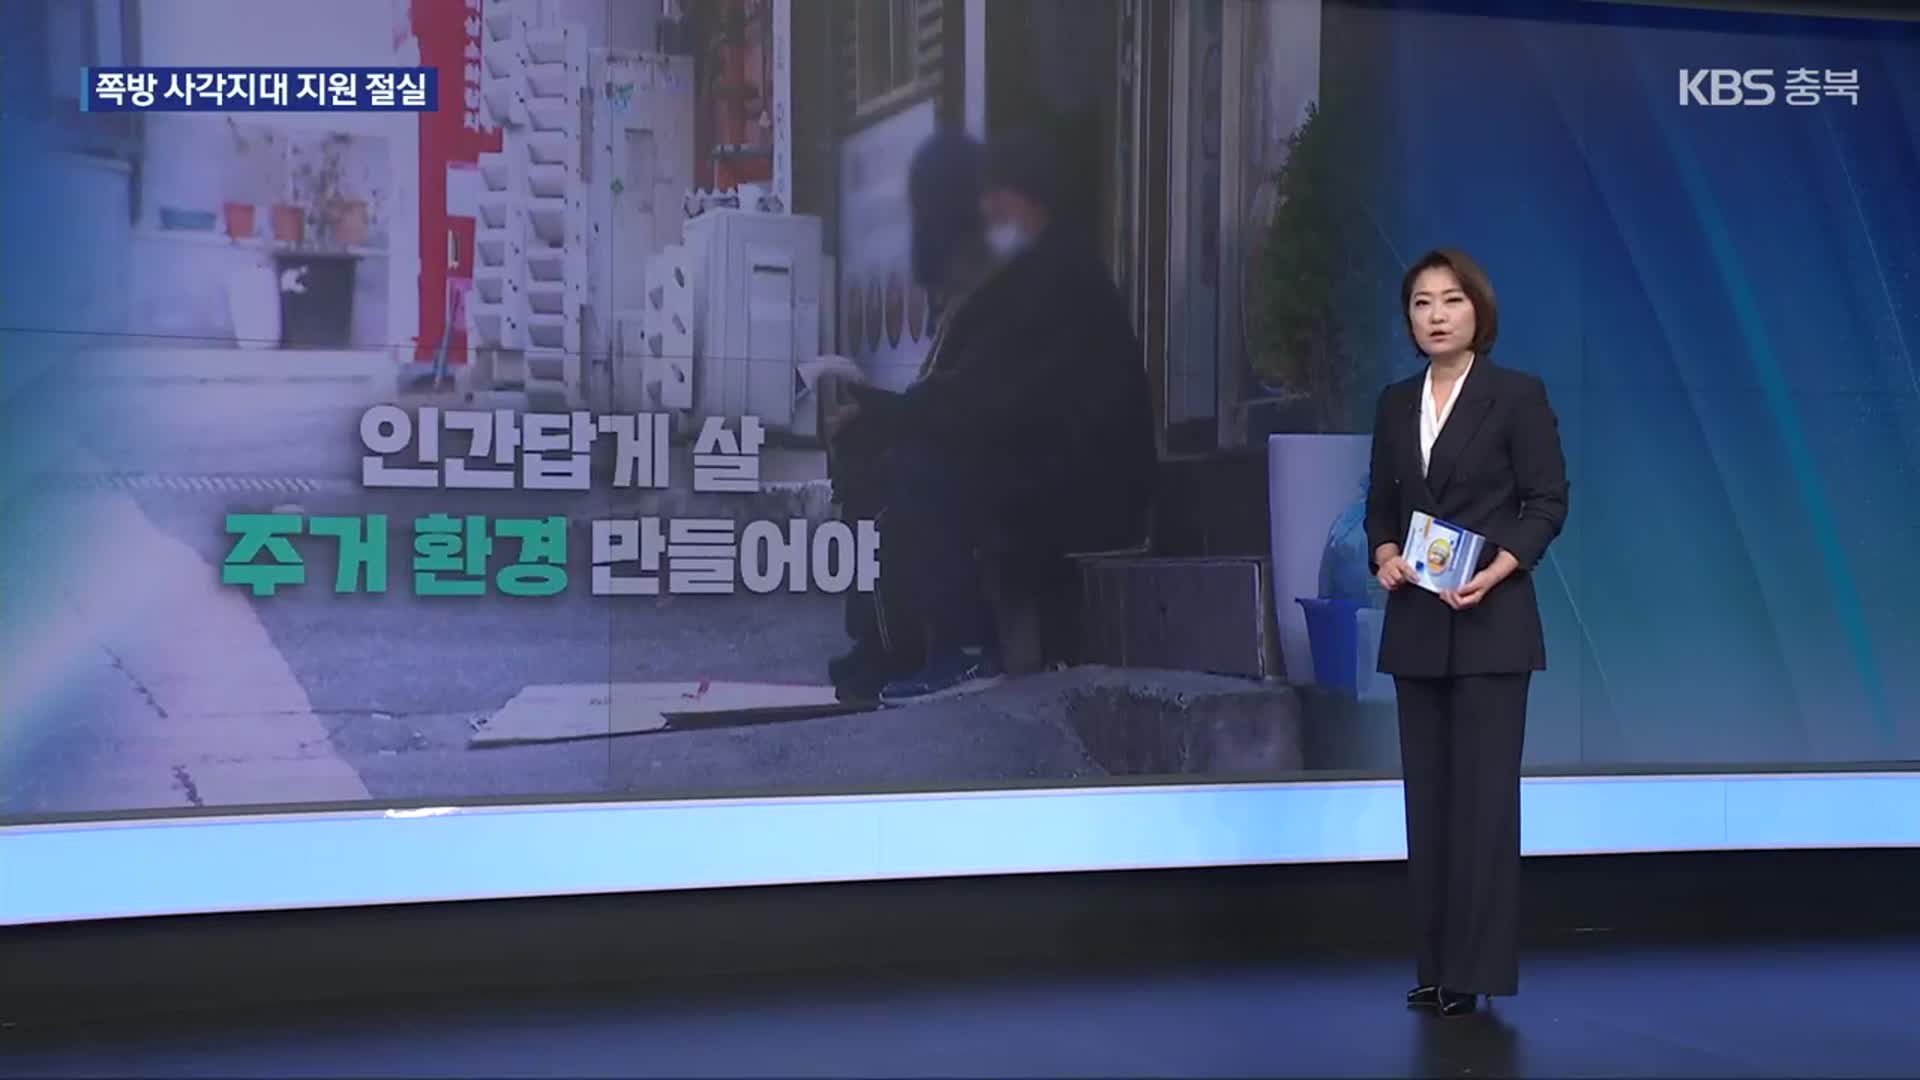 [친절한 뉴스K] 서울시의 기막힌 쪽방 구별법?…“쪽방이라고 다 같은 쪽방 아니다”